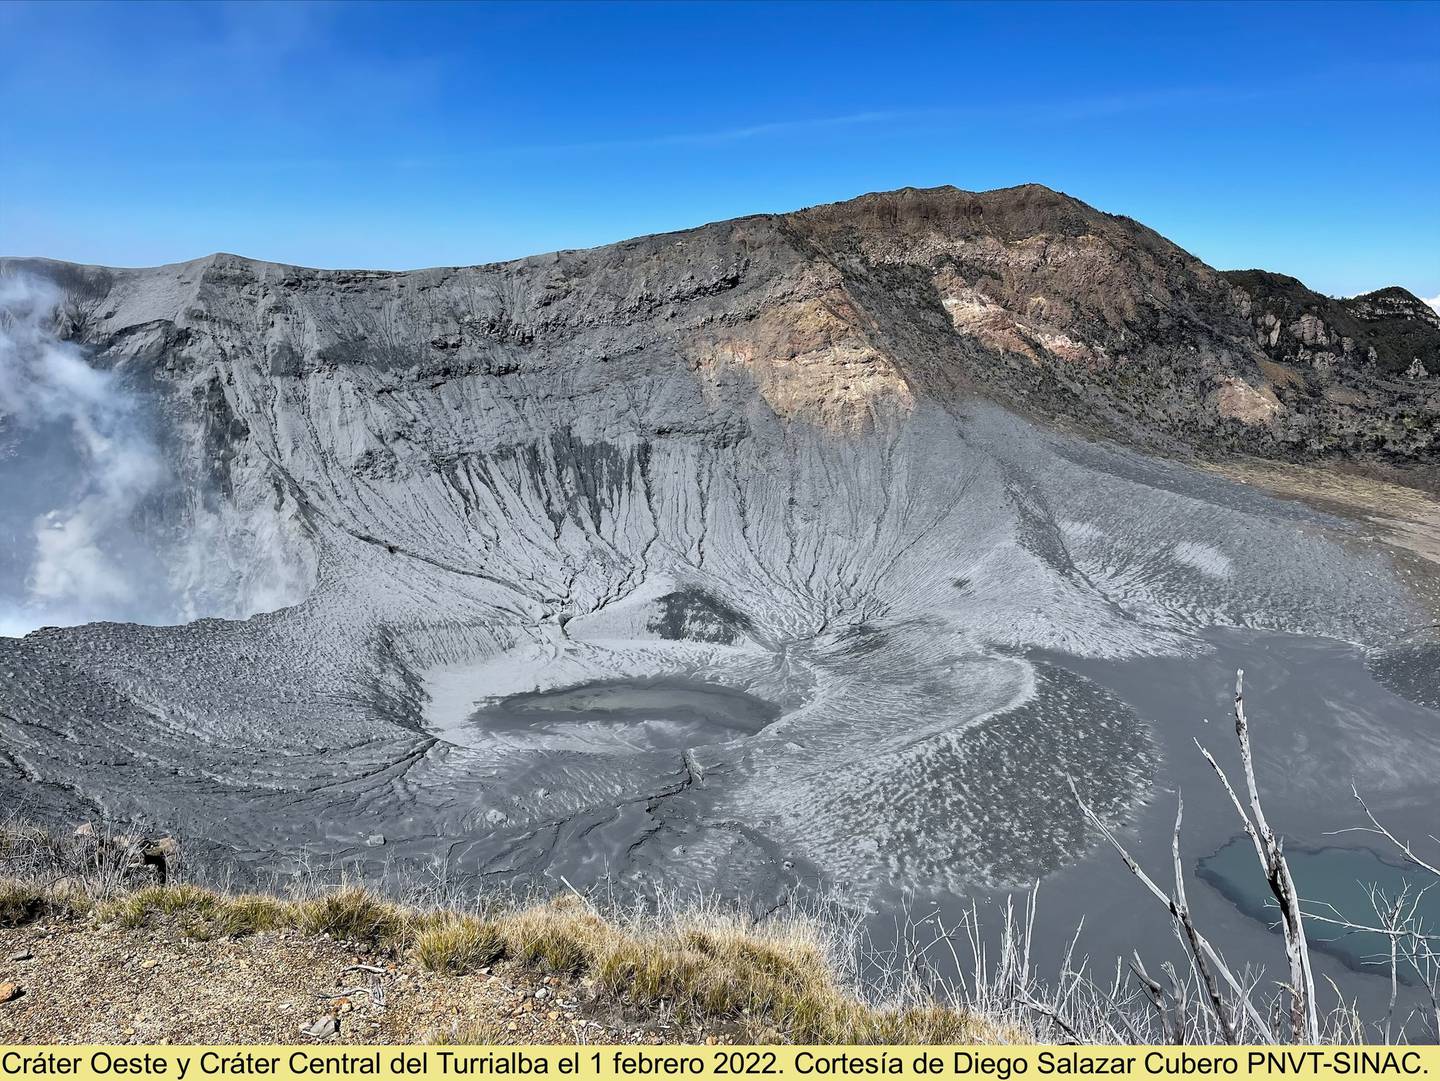 El 18 de enero pasado, un día después de la erupción más grande en el Turrialba, la cima quedó teñida de gris. Esa tonalidad prevelece aún y fue generada por un flujo piroclástico. Foto: Cortesía Jorge Barquero.